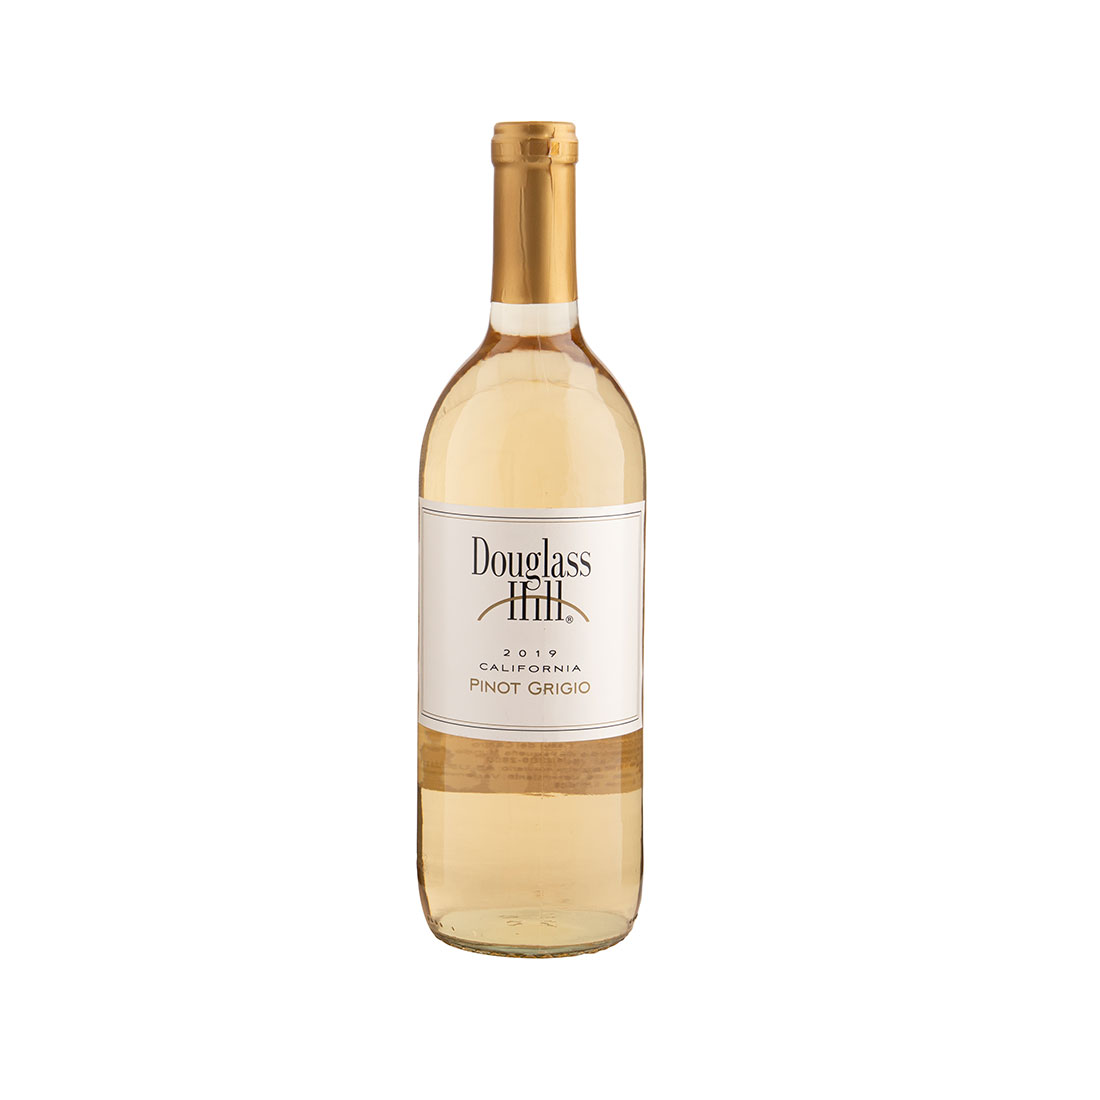 Vino blanco pinot grigio Douglass Hill 750ml